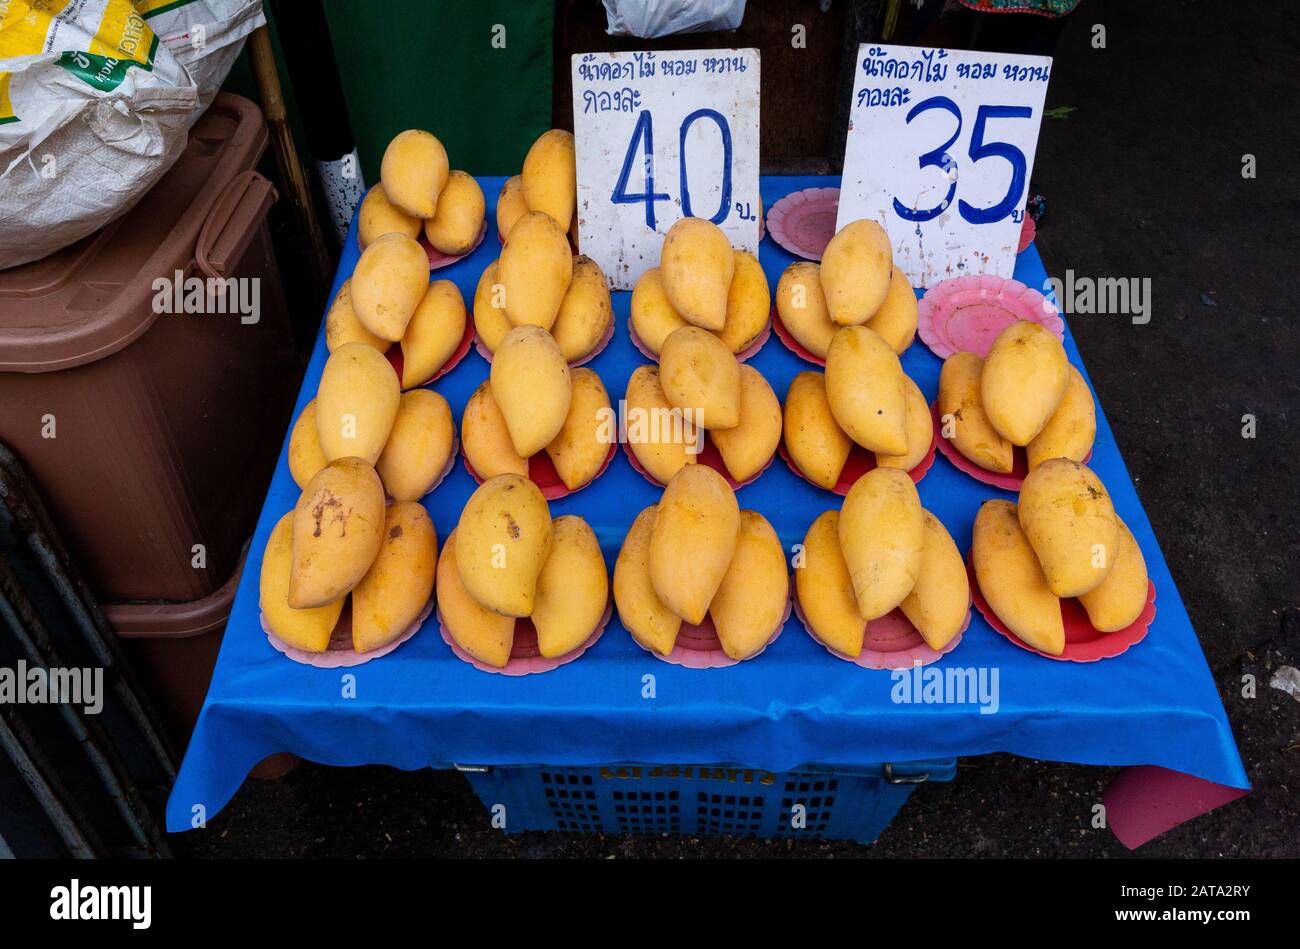 ManGO gialli in vendita presso un mercato di strada all'aperto a Chiang mai, Thailandia, con prezzi in Baht (valuta tailandese). Foto Stock